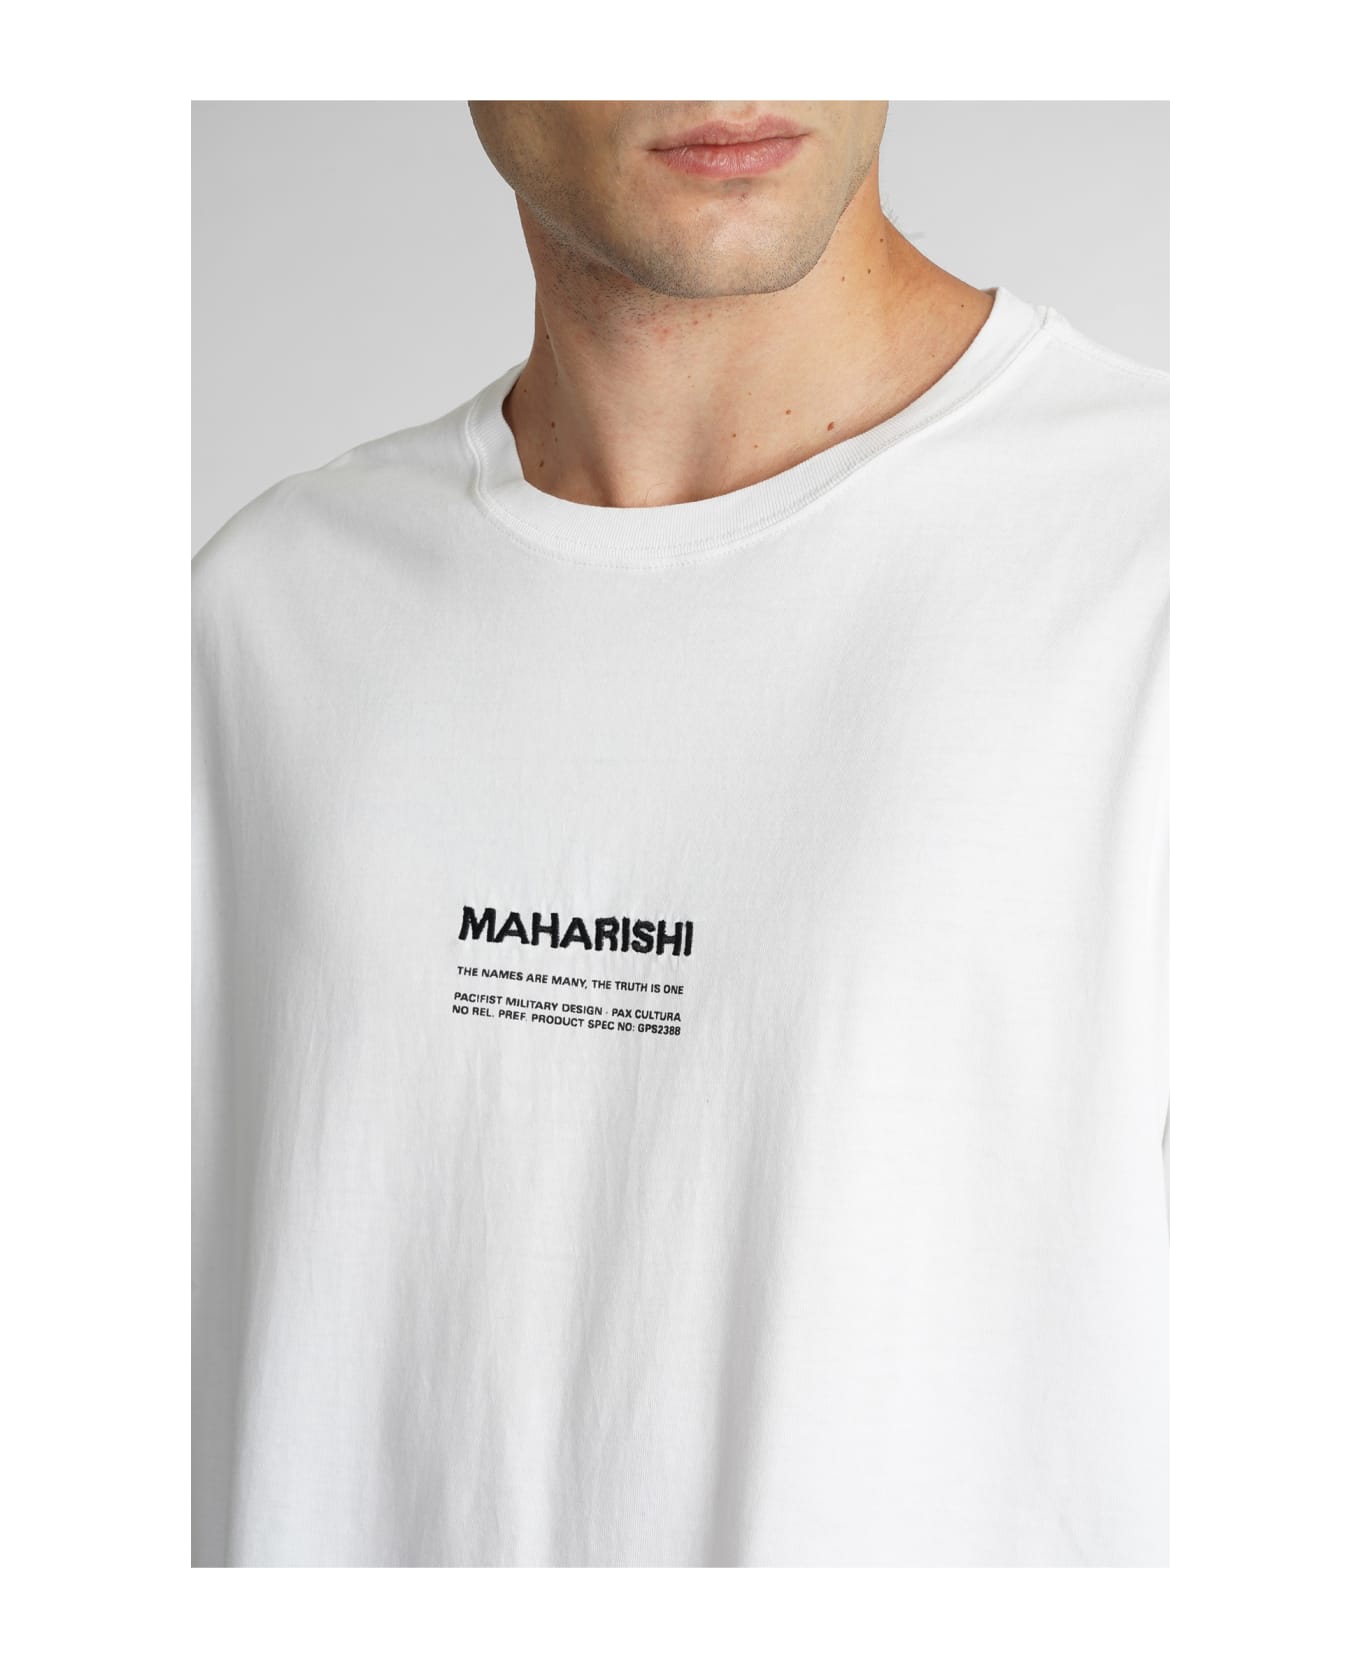 Maharishi T-shirt In White Cotton - white